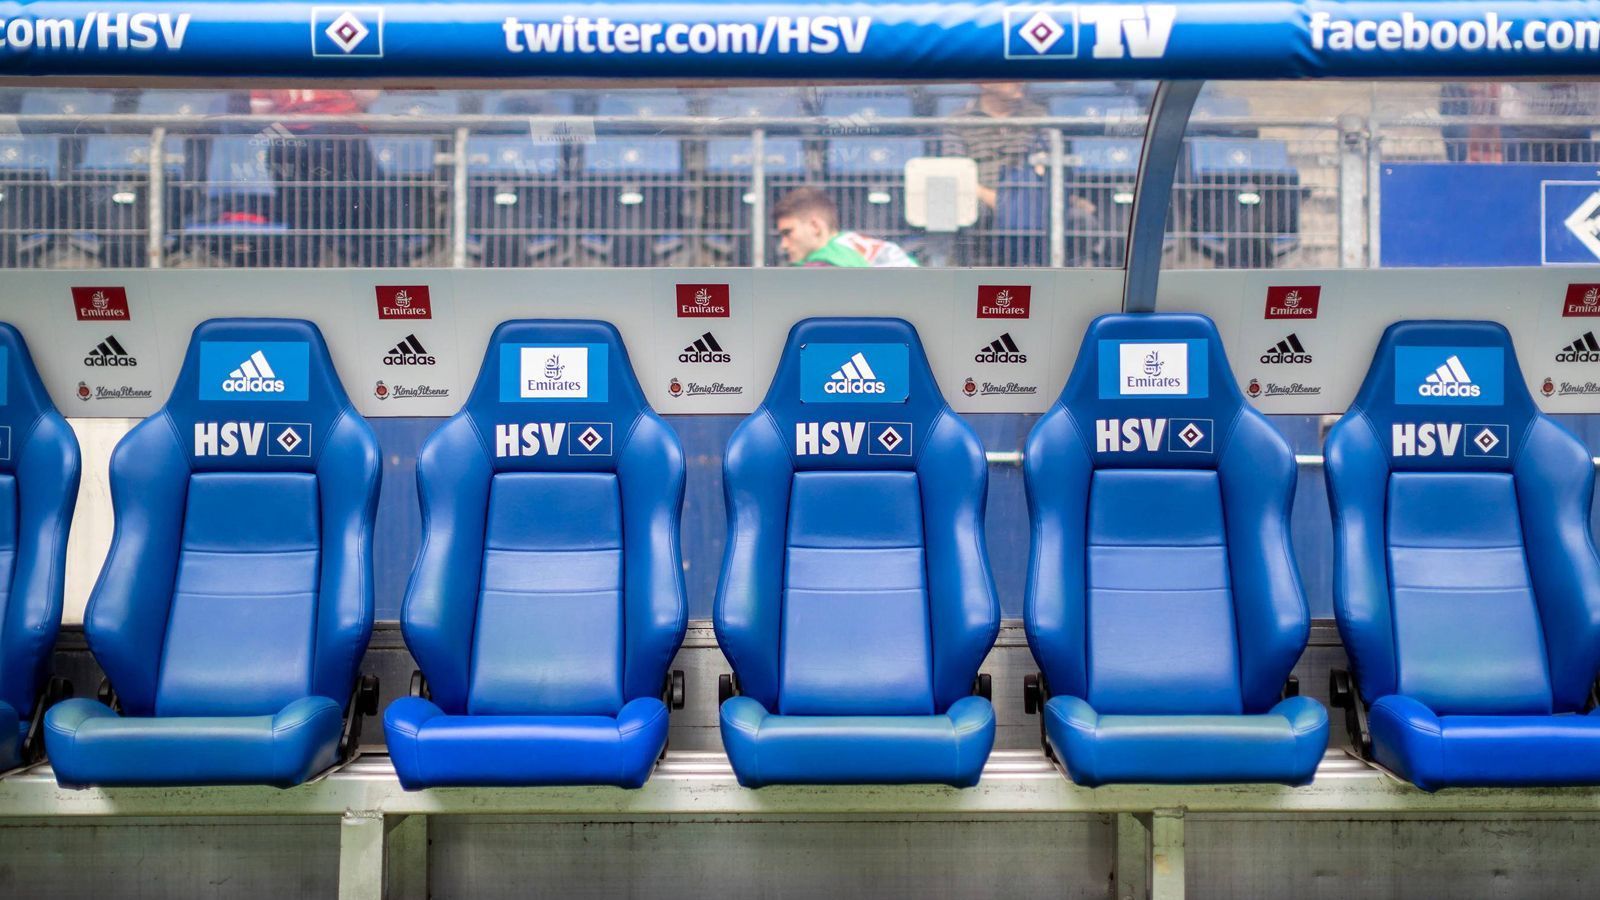 
                <strong>HSV hilft kostenlos aus</strong><br>
                Nochmal Dassendorf: Die räumliche Nähe zum Hamburger SV macht es möglich: Für das Pokalspiel leiht sich der ewige Oberligist die Trainerbänke des HSV aus. Wie Mäzen Funk schon erwähnte: Die Infrastruktur ist beschränkt. Heißt: Die Bänke im Stadion Sander Tannen sind uralt. Der HSV hat sofort kostenlos geholfen. Ob es Glück bringt, ist dann die andere Frage.
              